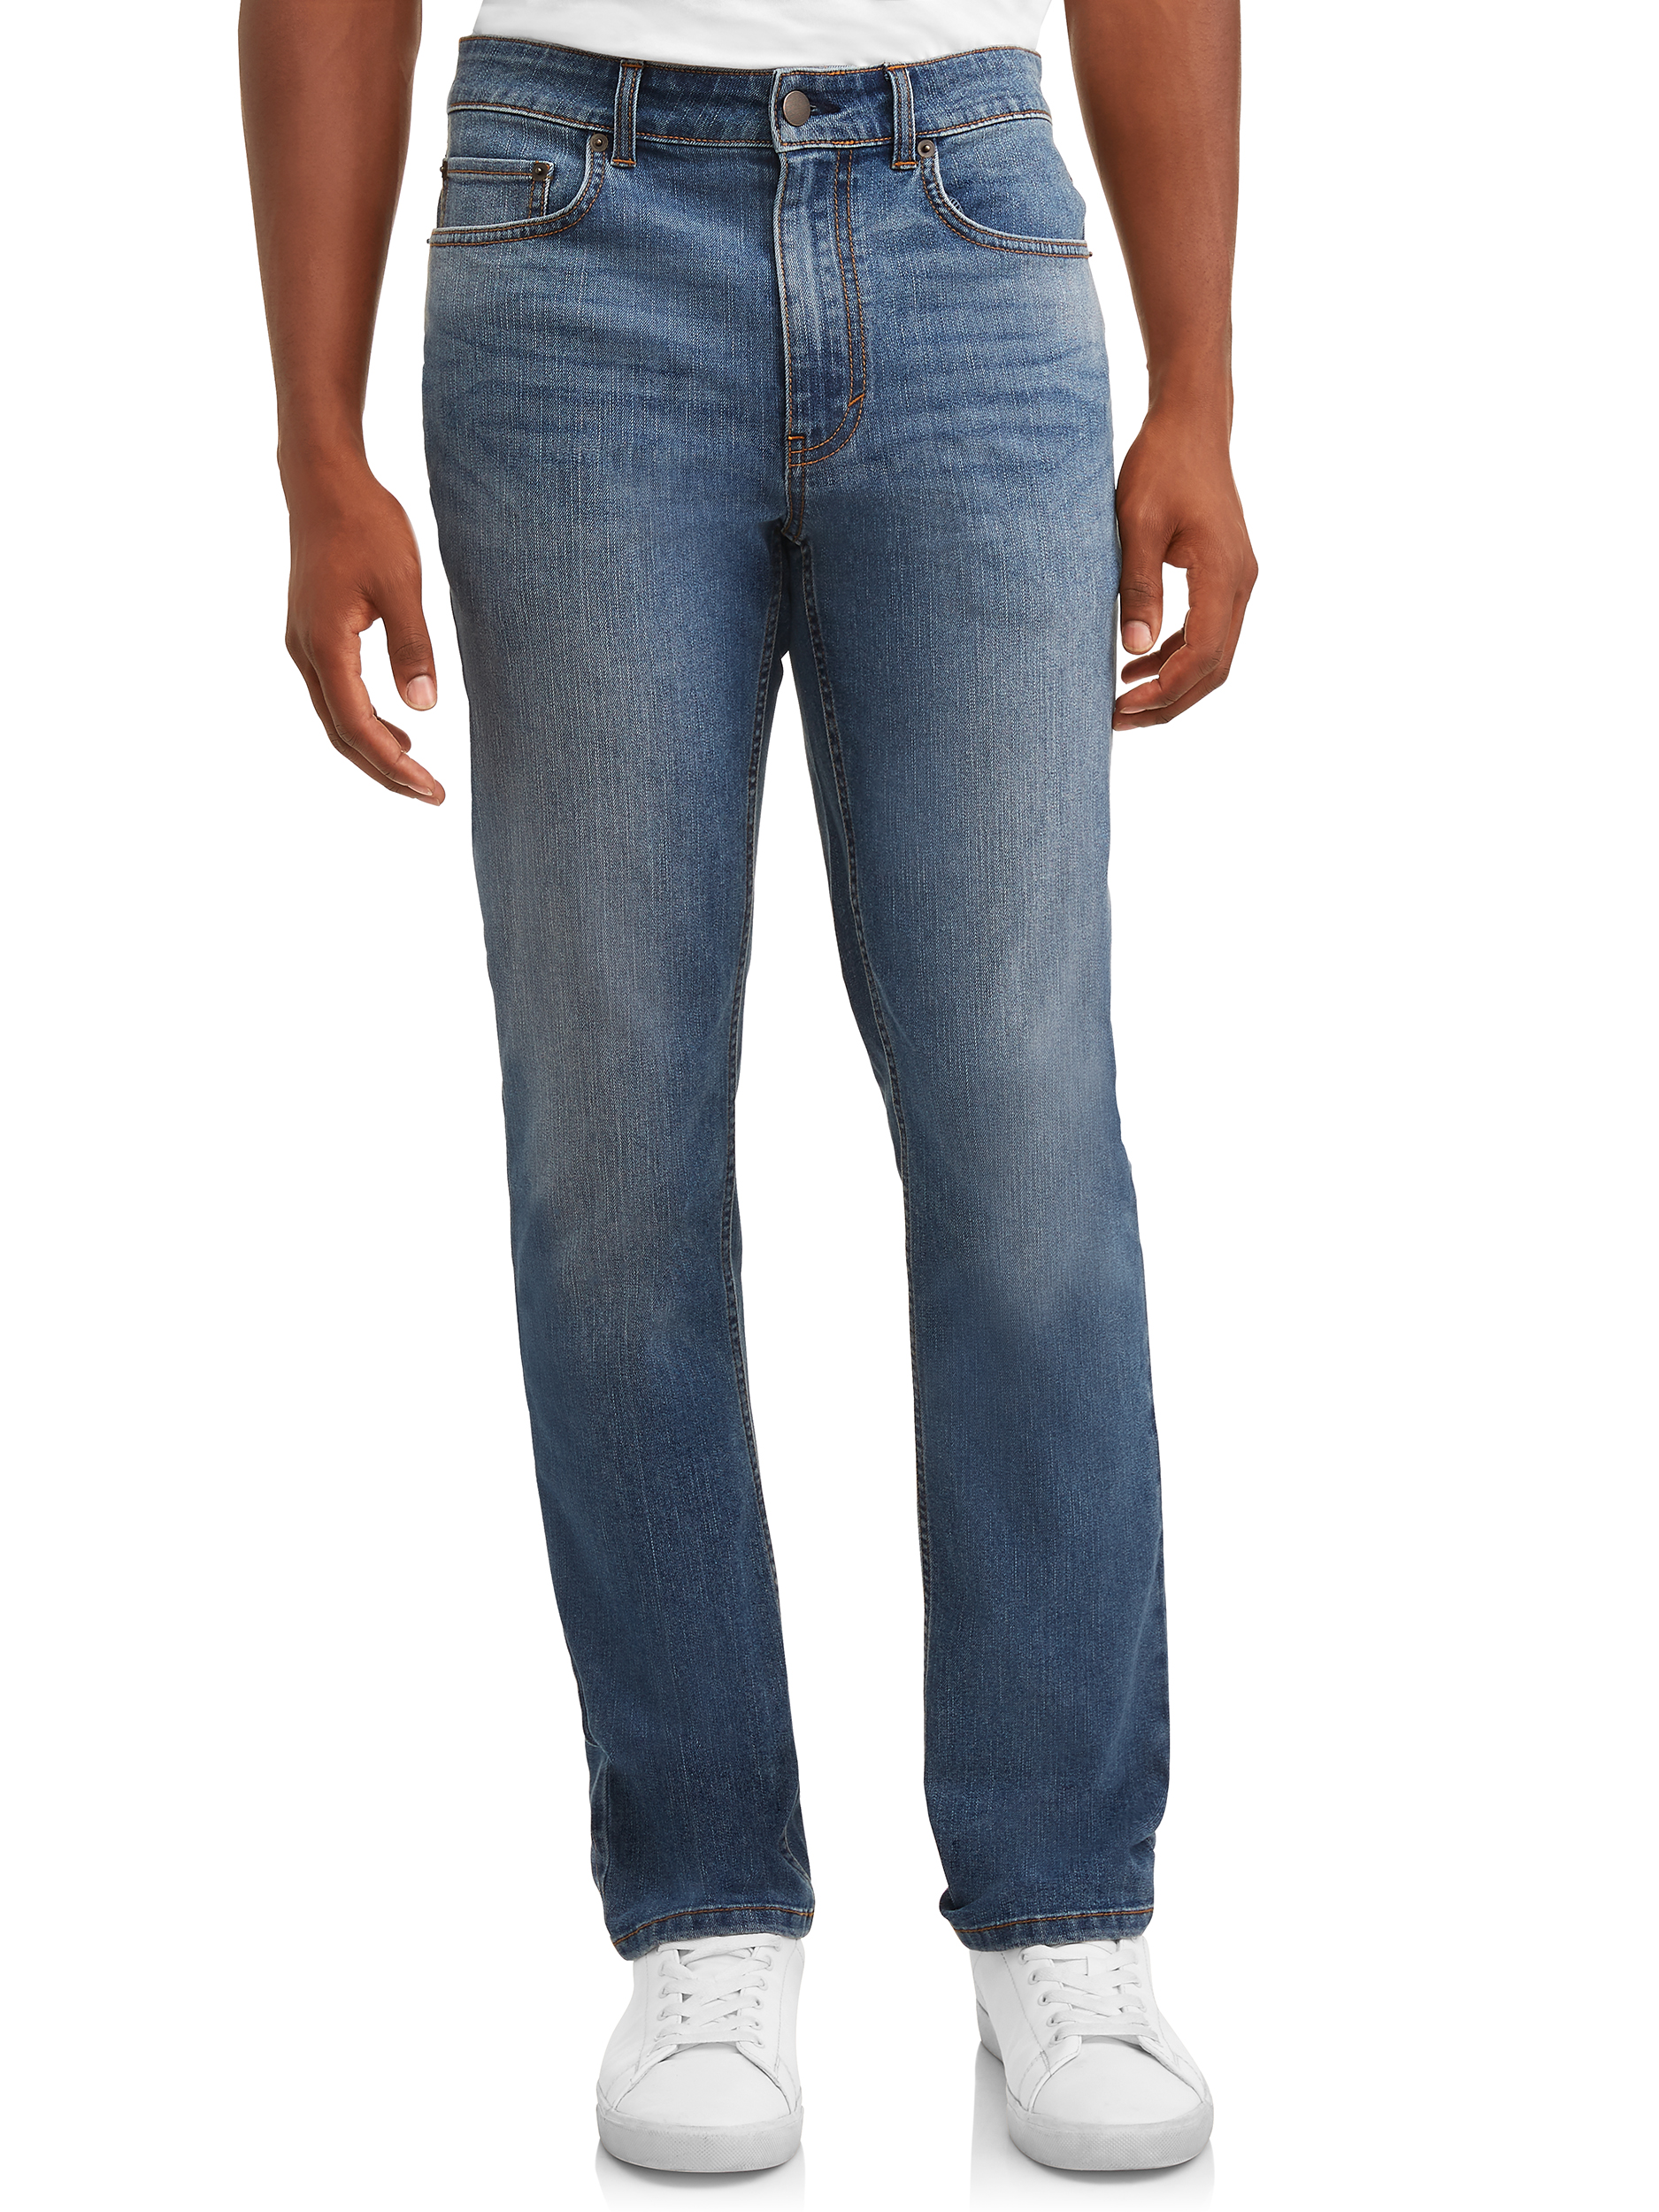 George Men's Premium Denim Jeans - image 1 of 4